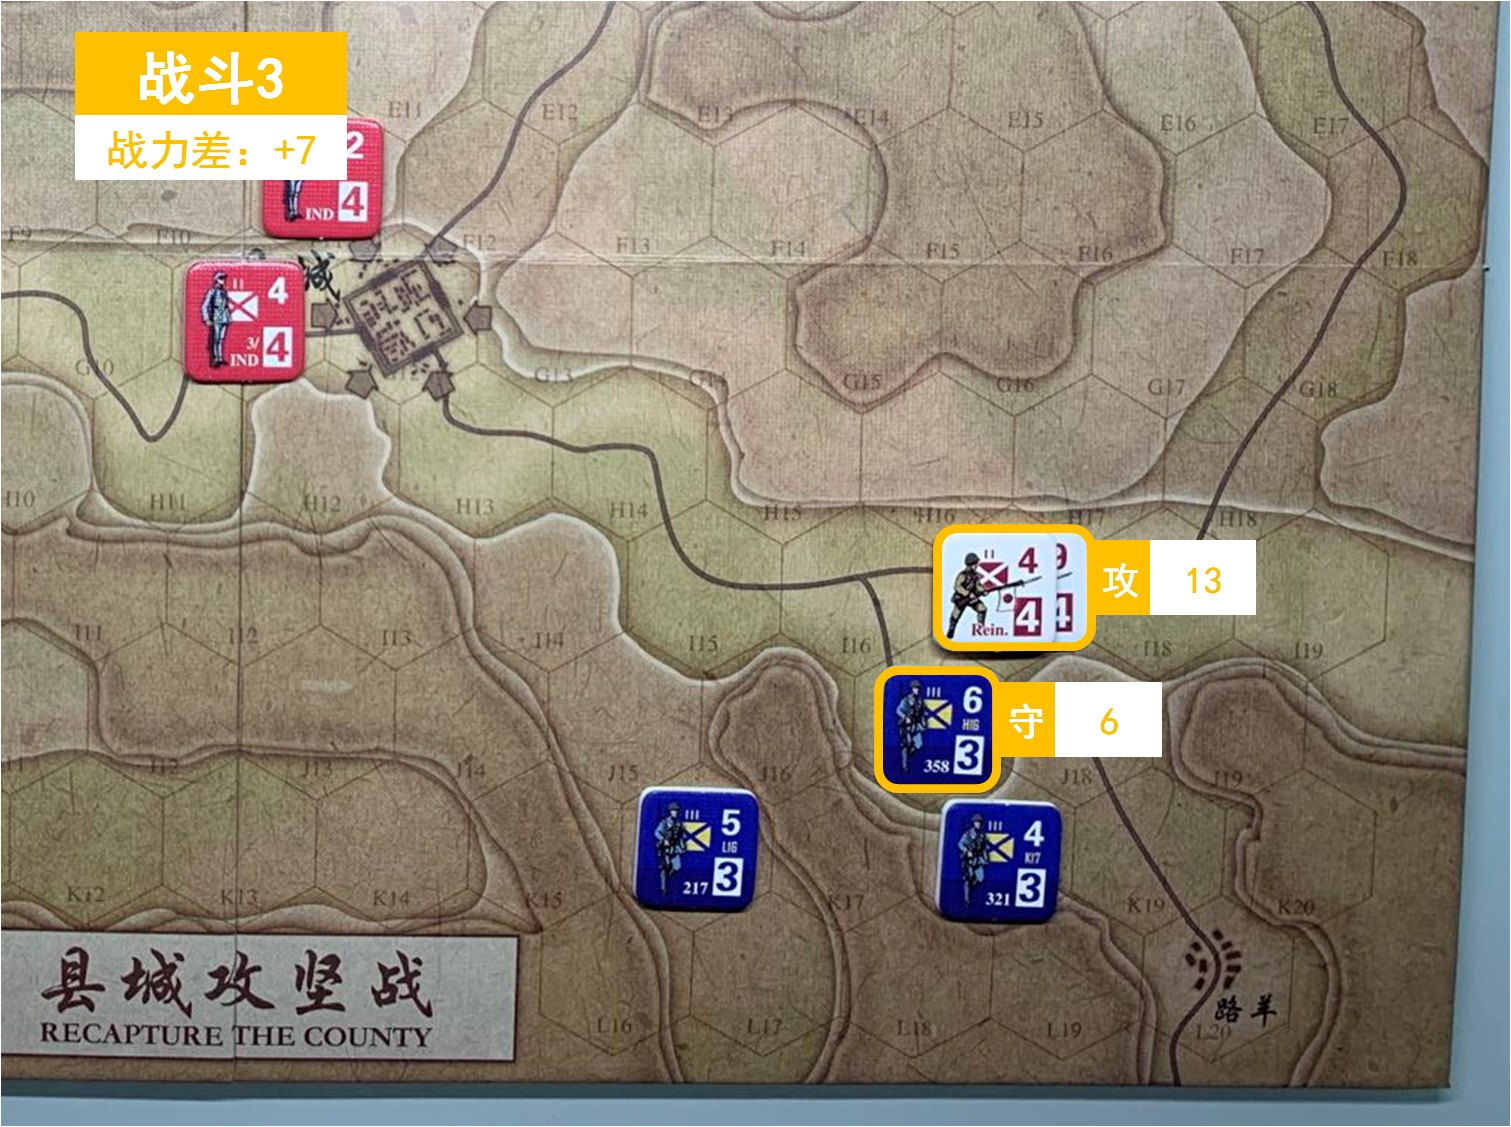 第二回合 日方戰鬥階段 戰鬥3 戰鬥力差值